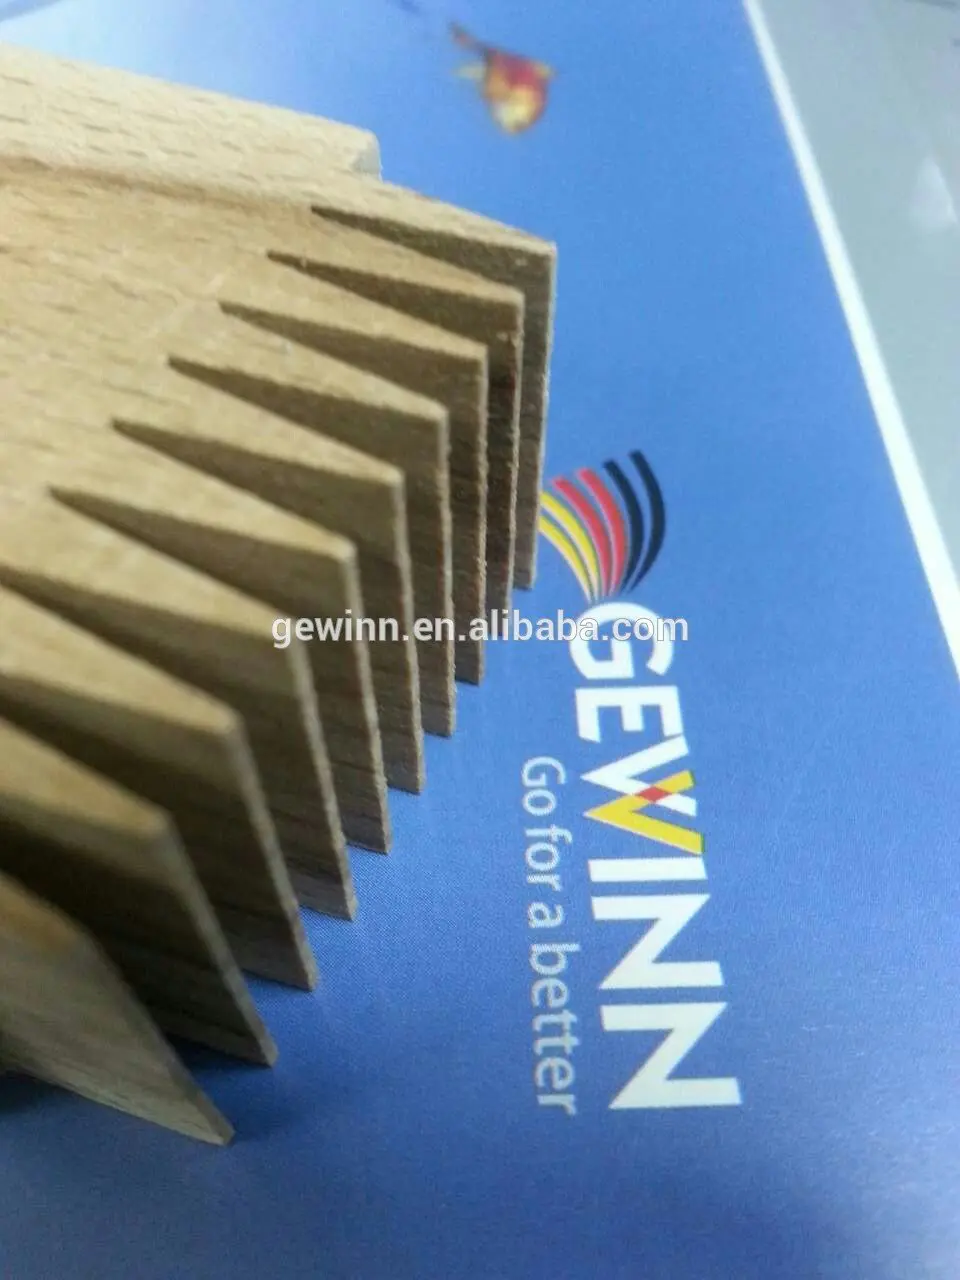 panel sliding table sawmill manufacturers Gewinn Brand